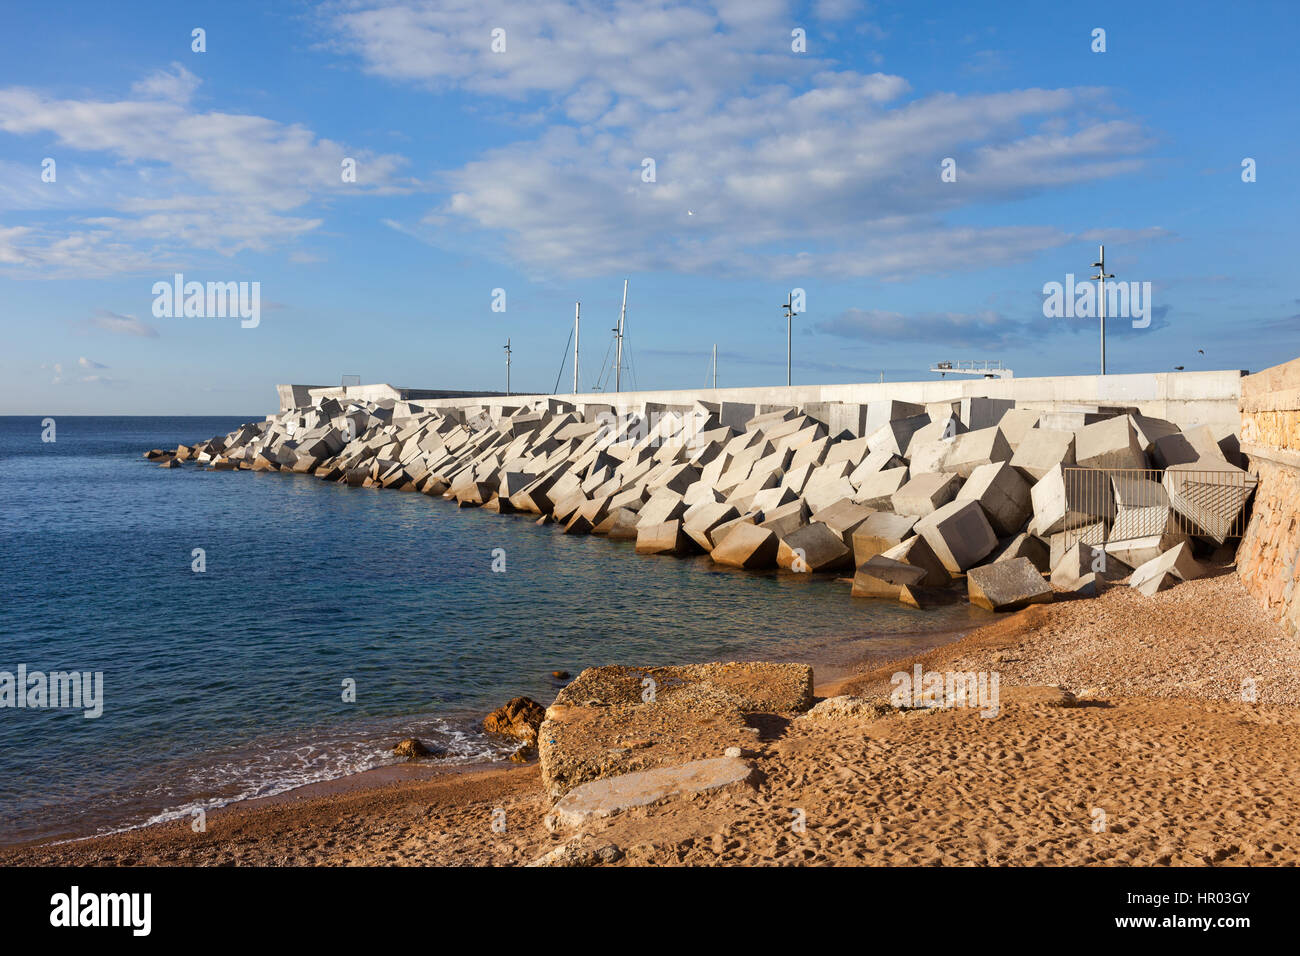 Spagna blanes, frangionde porto Molo e piccola spiaggia al mare Mediterraneo Foto Stock